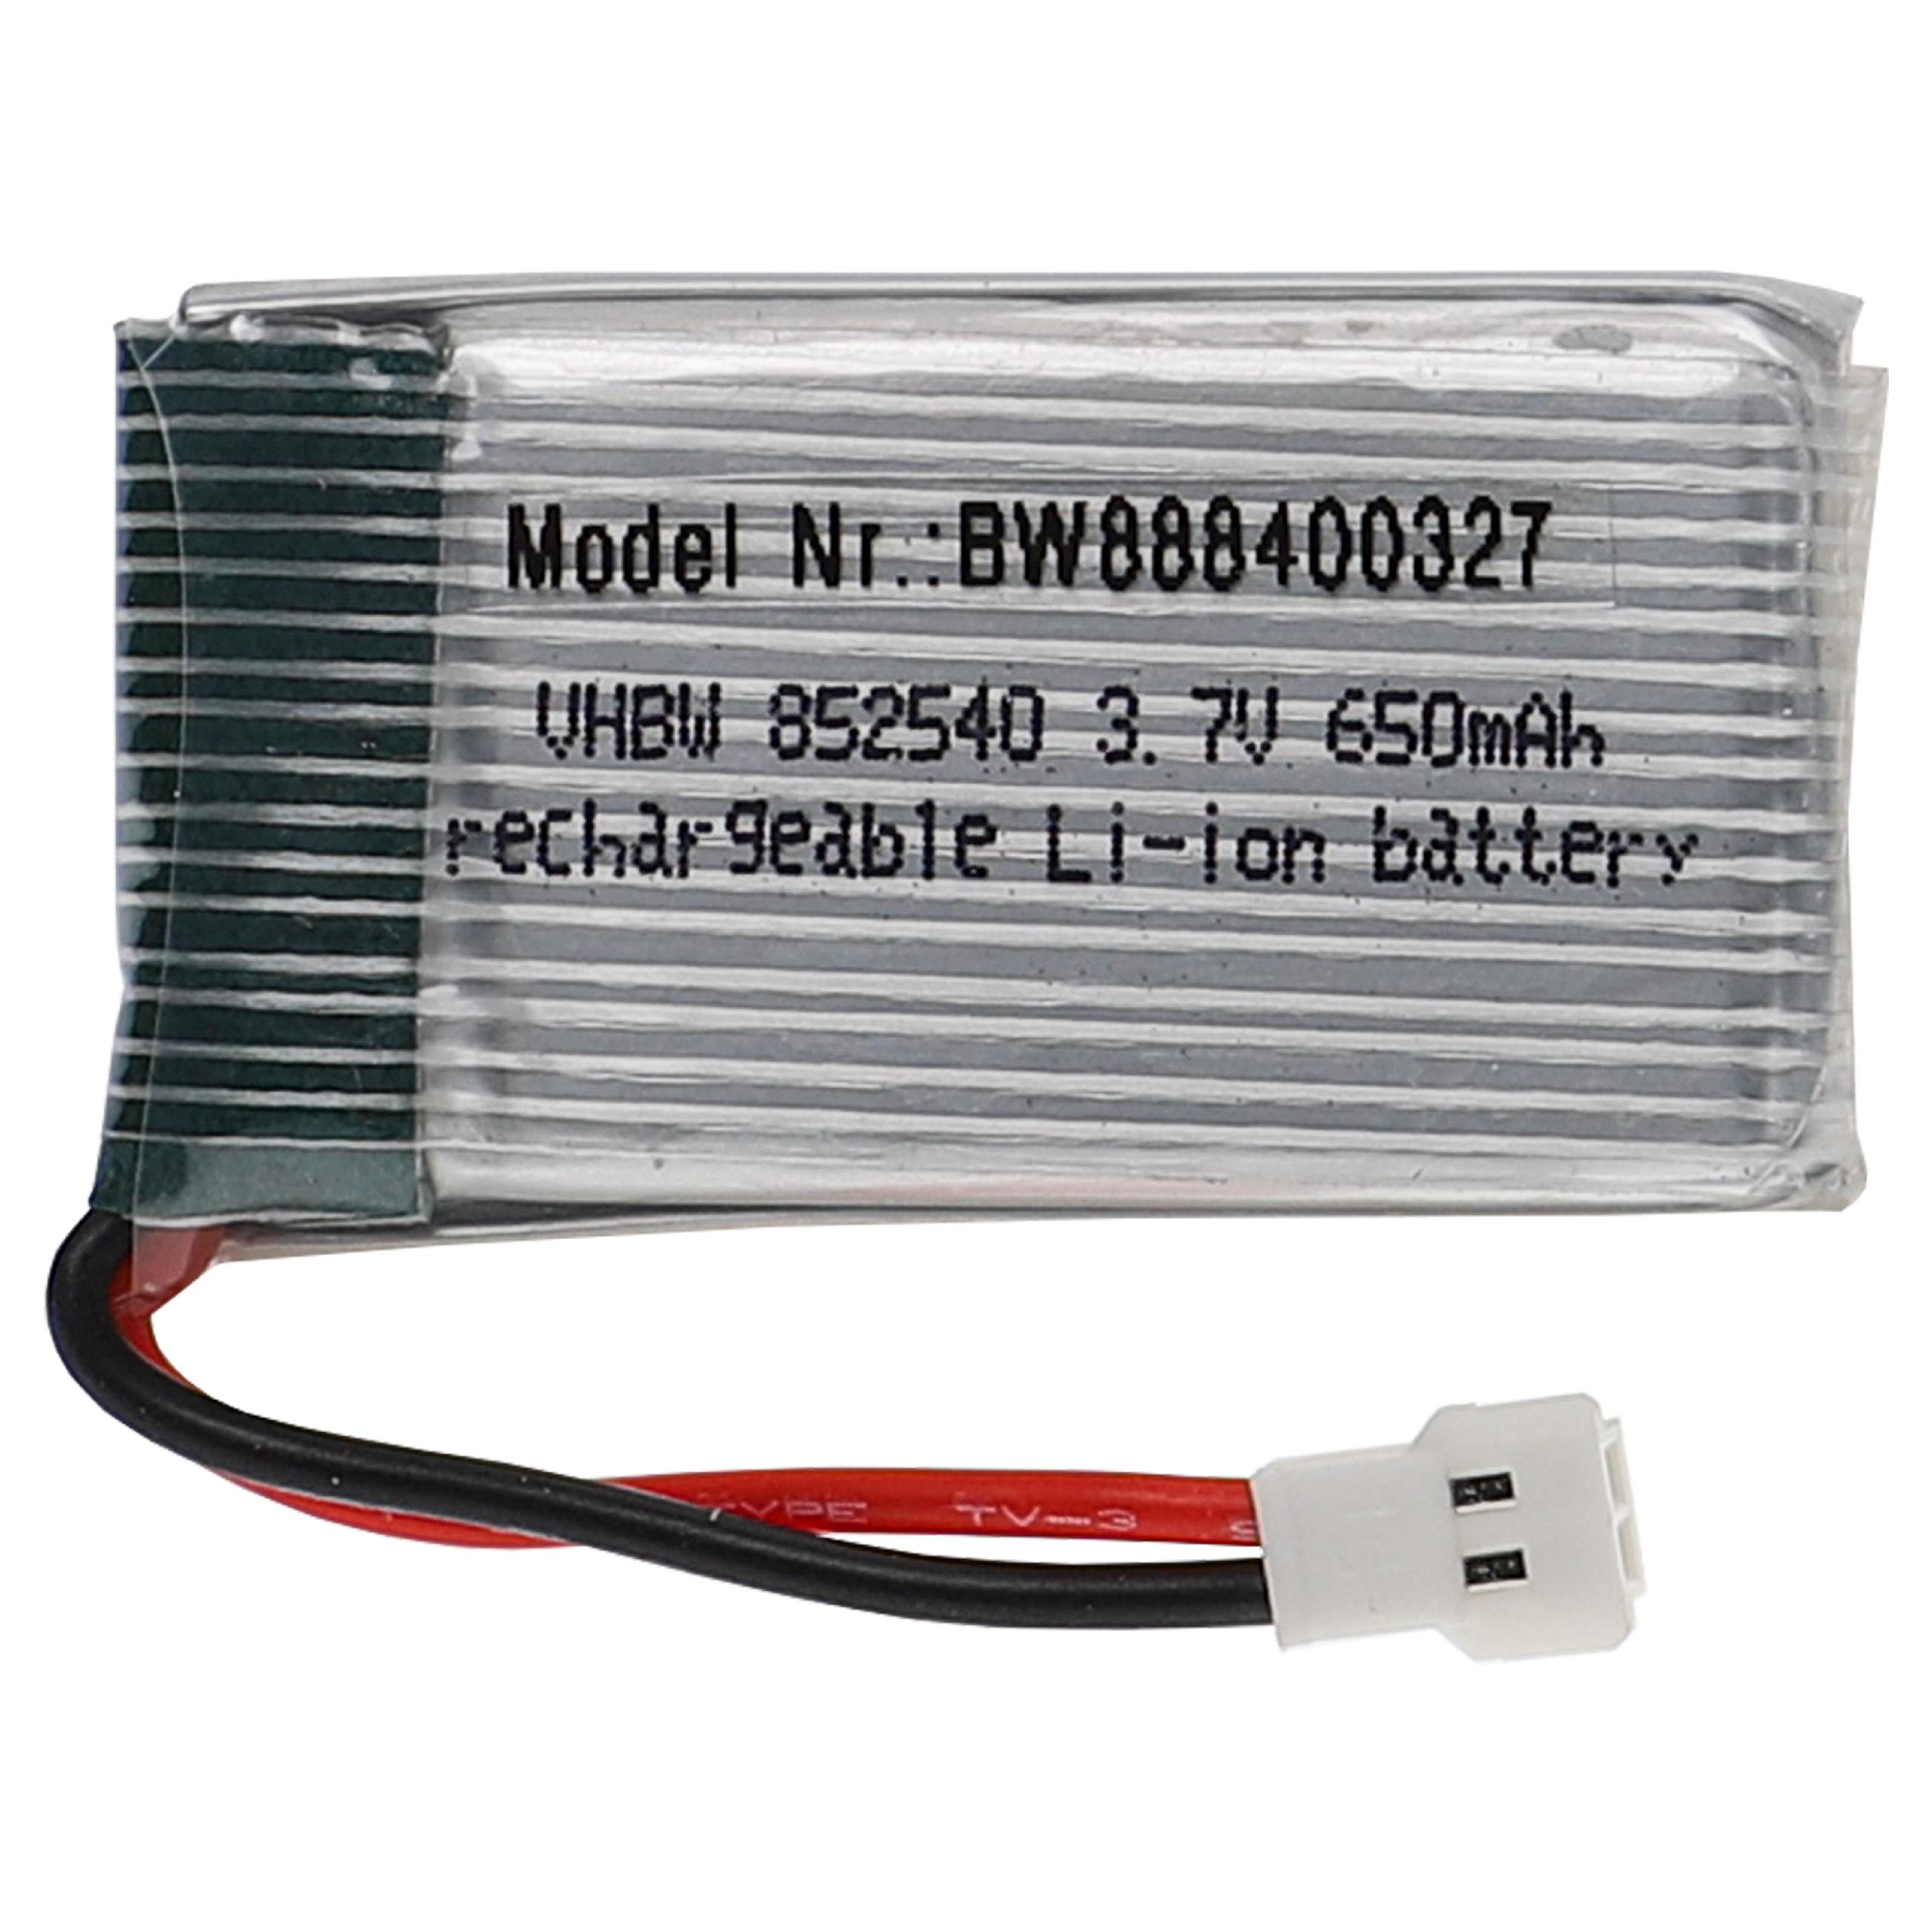 Batterie pour modèle radio-télécommandé - 650mAh 3,7V Li-polymère, XH 2.54 2P